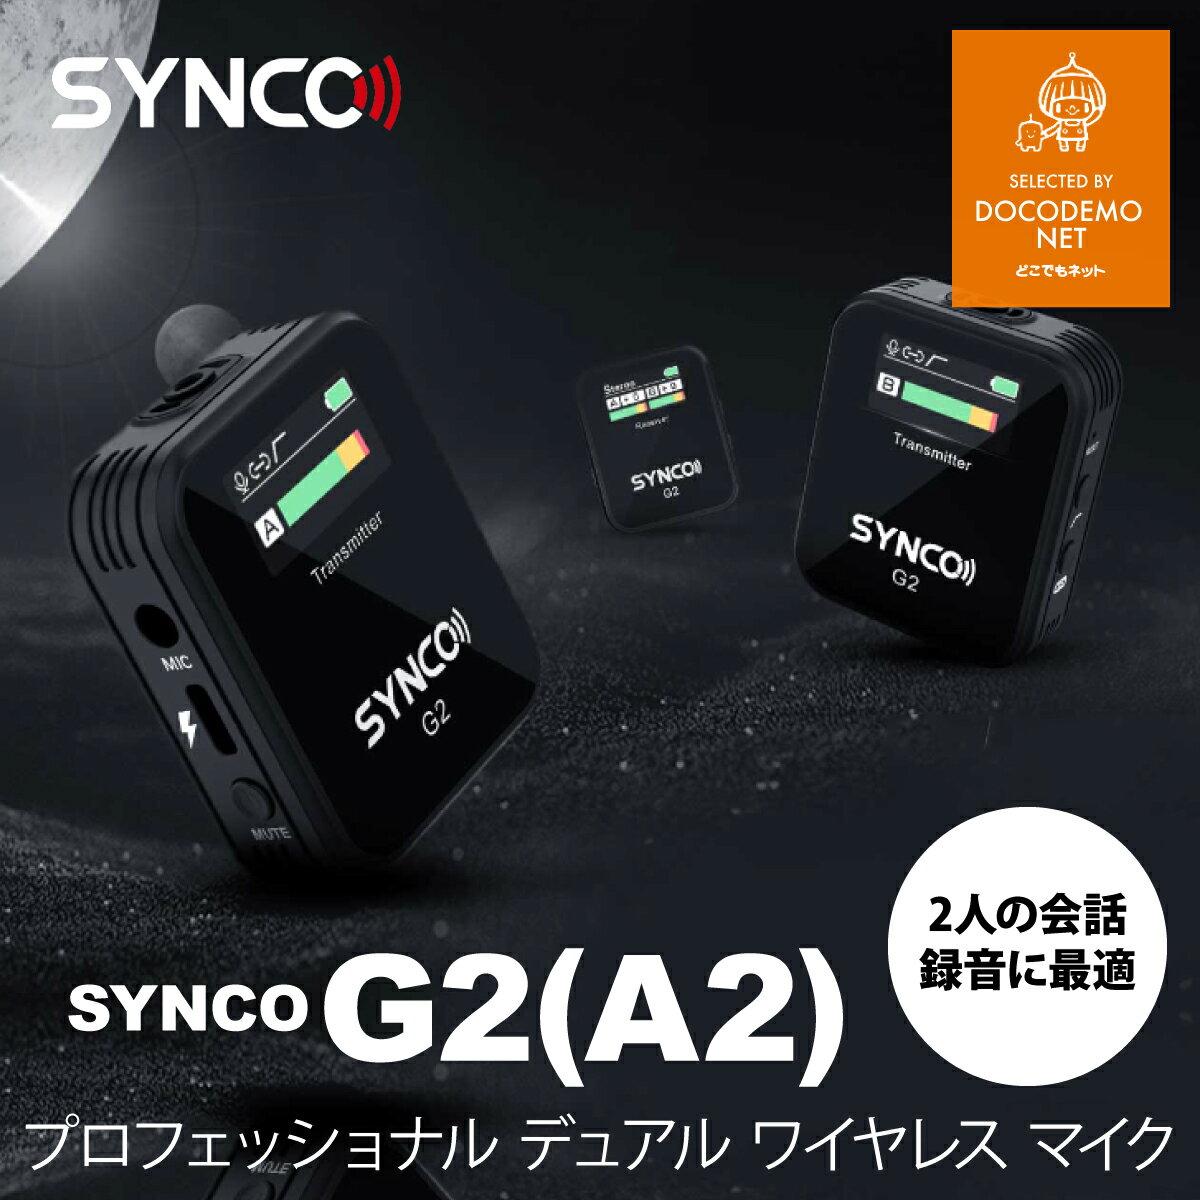 技適マーク付き SYNCO G2 A2 ワイヤレスピンマイクシステム 送信機2台＋受信器1台 スマホ外付け マイク カメラマイク 軽量小型 自動ペアリング 操作簡単 カメラ スマホ 2.4GHz 並行輸入品